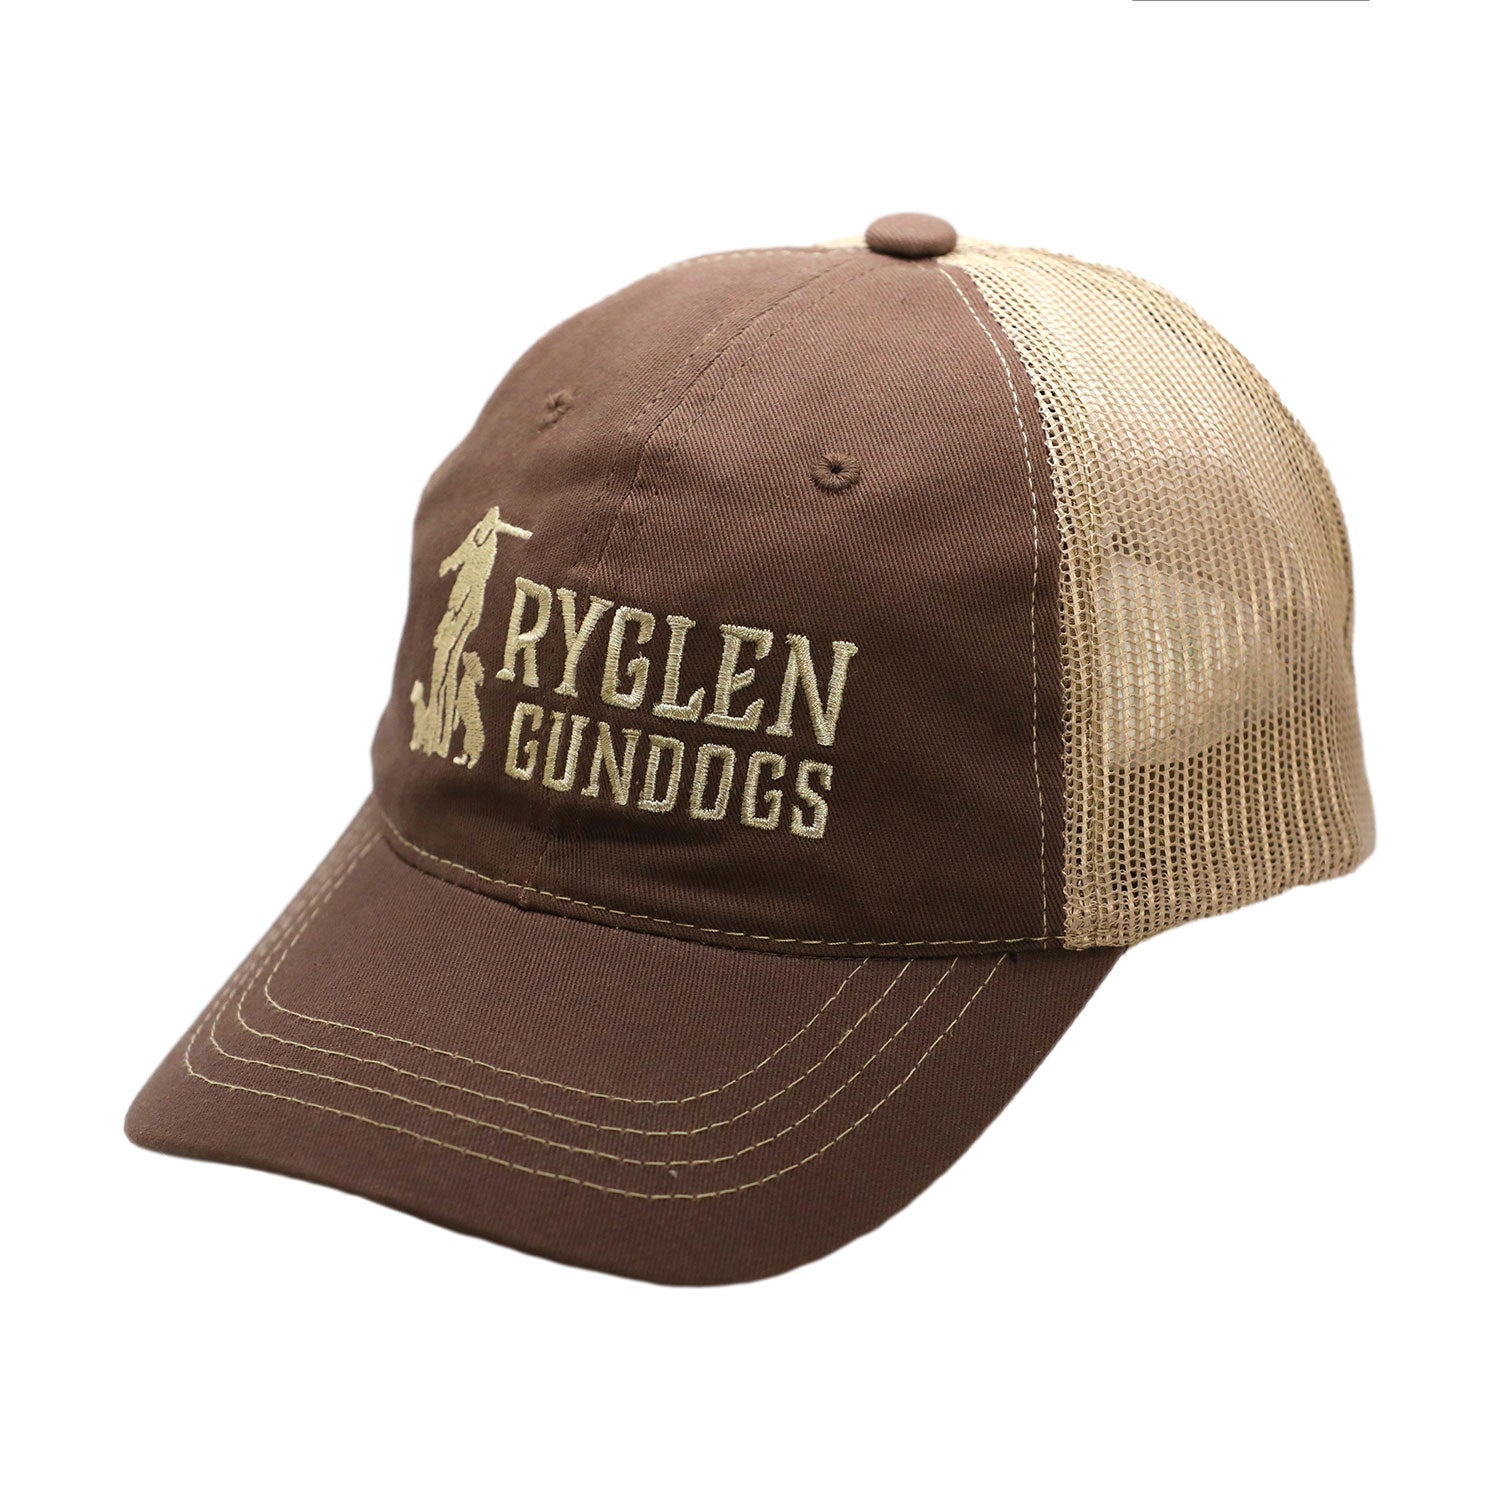 Ryglen Yeti 30 oz Stainless with handle – Ryglen Gundogs Storefront